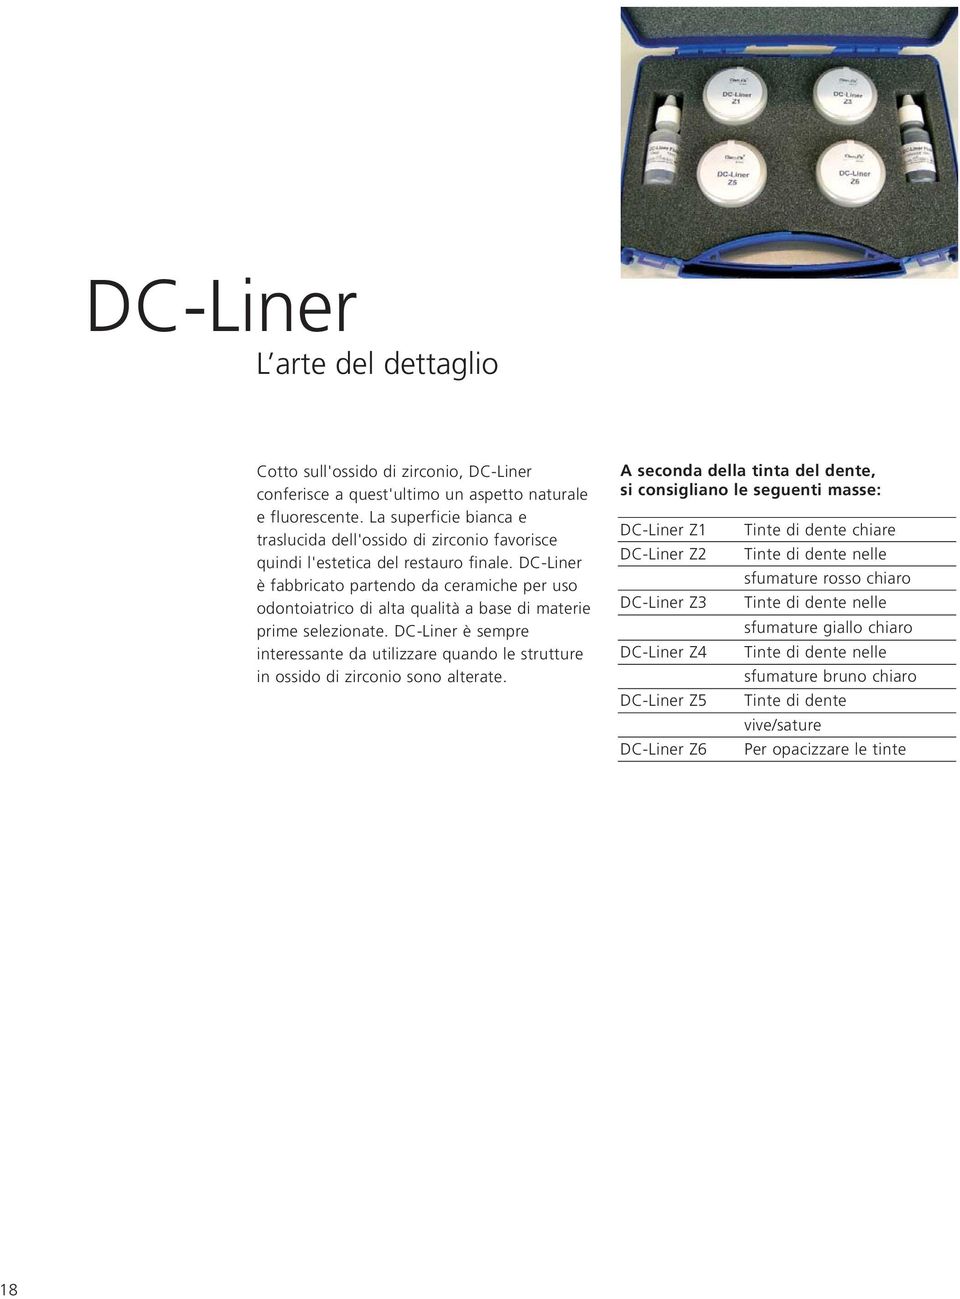 DC-Liner è fabbricato partendo da ceramiche per uso odontoiatrico di alta qualità a base di materie prime selezionate.